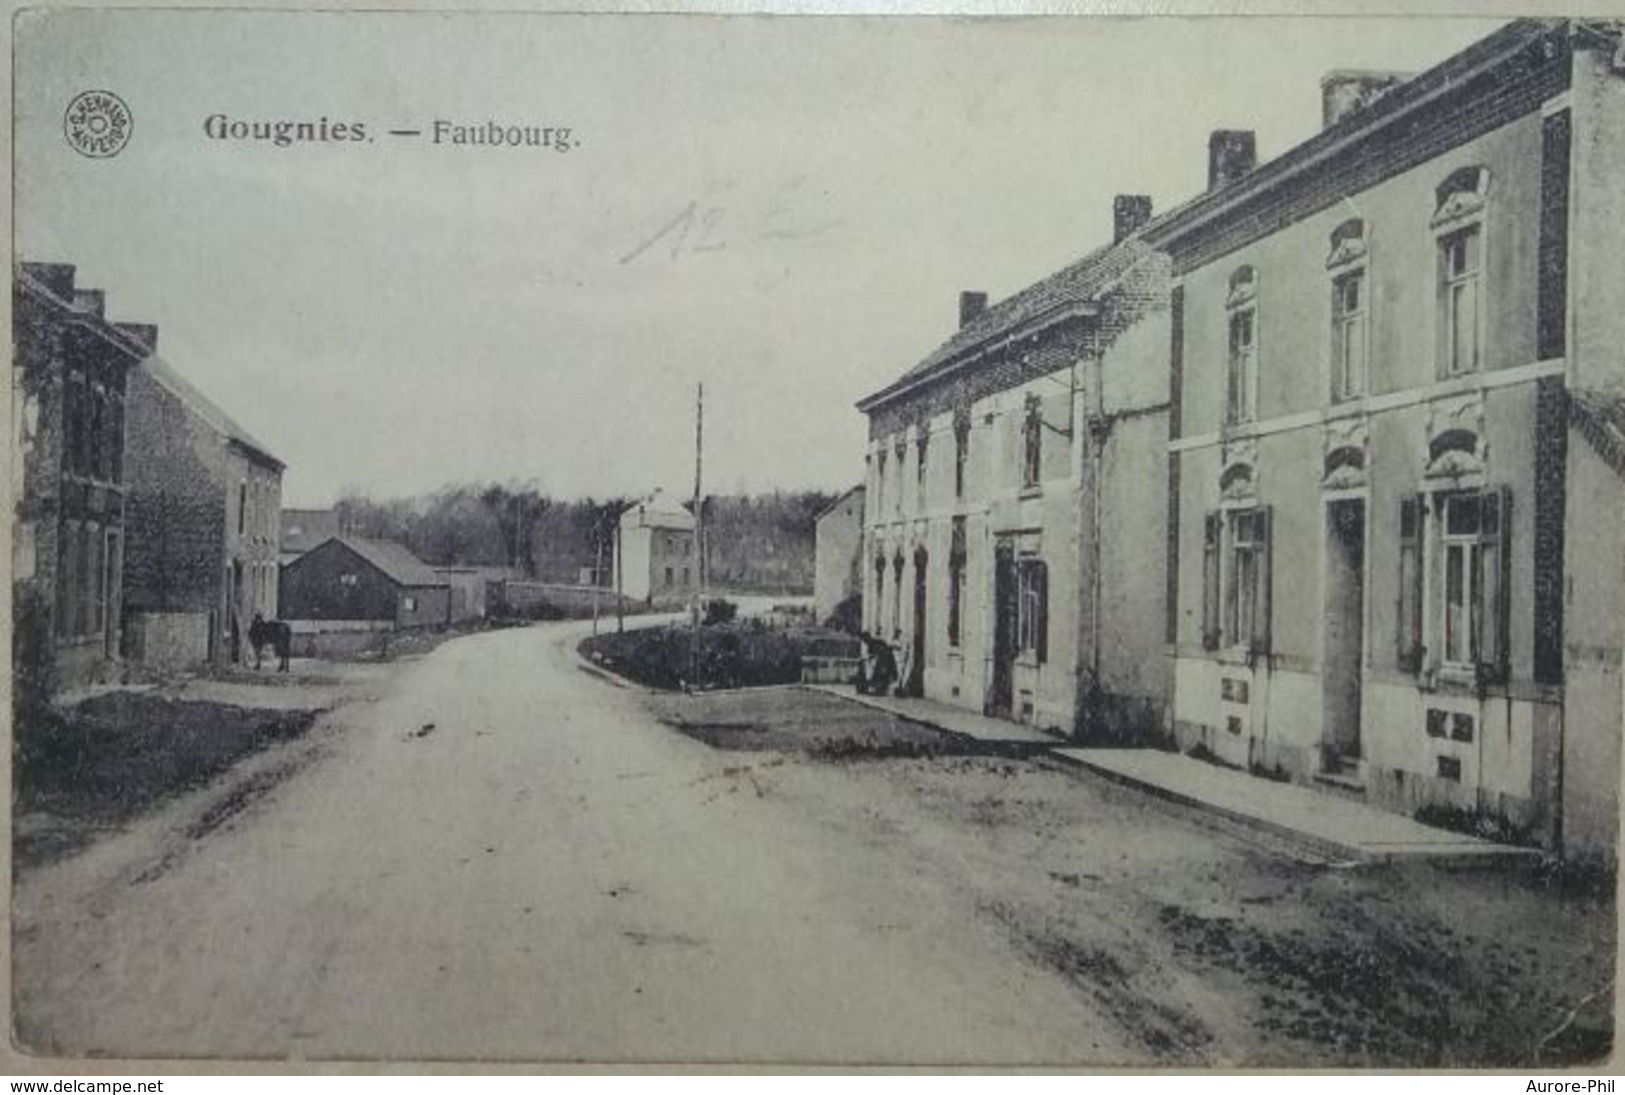 Gougnies Faubourg - Gerpinnes